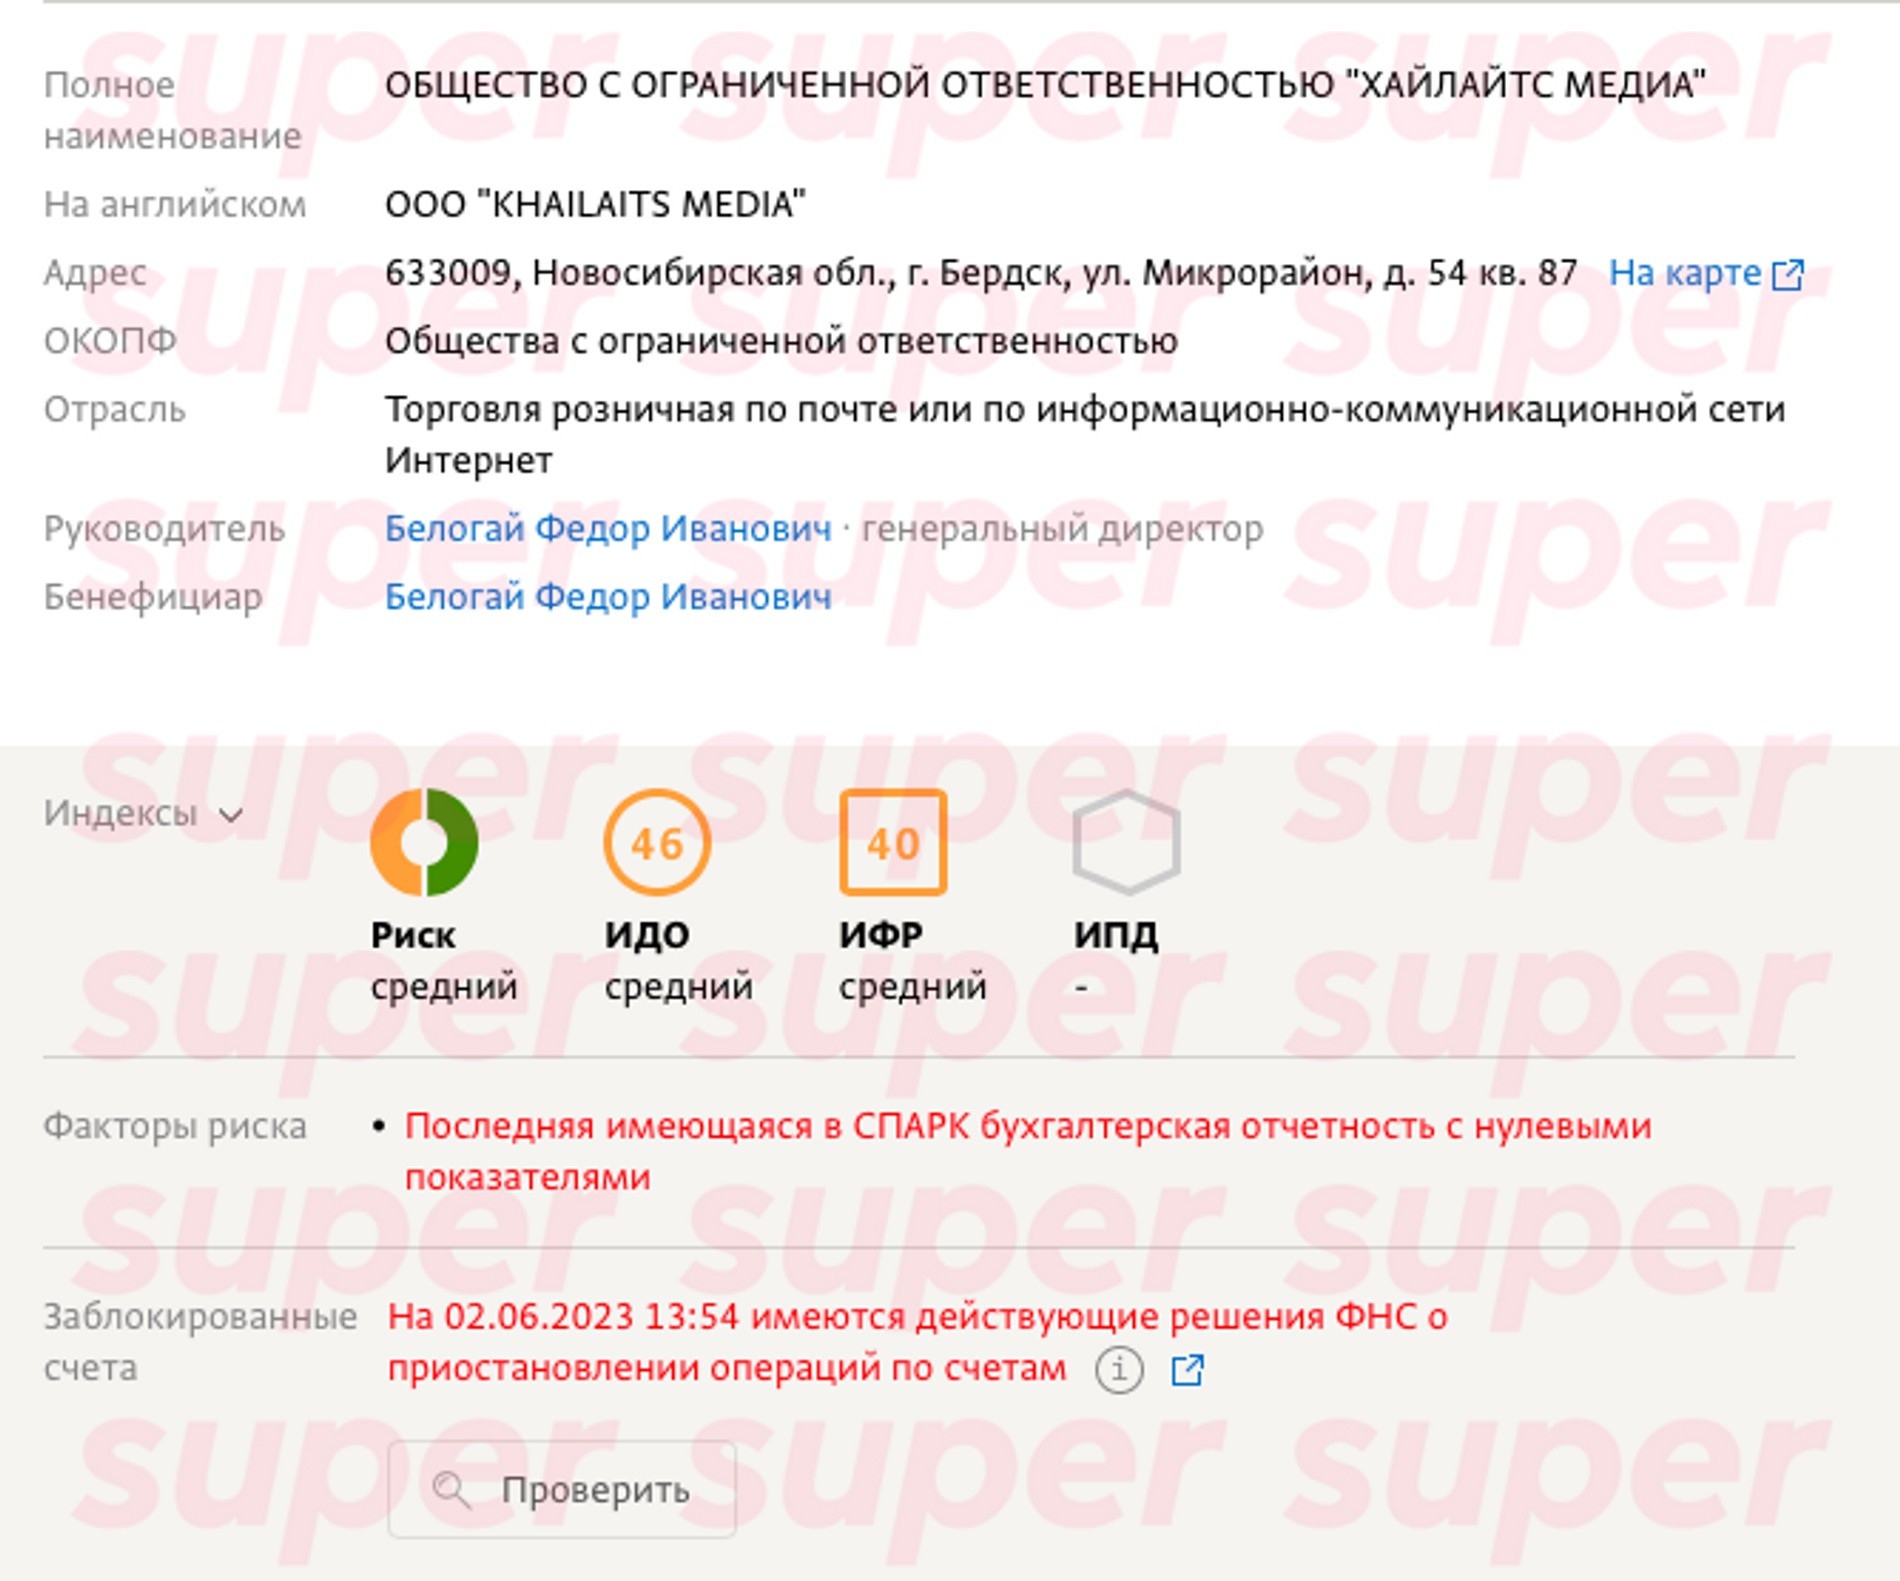 Заблокированный счет компании Белогая
Фото: «СПАРК-Интерфакс»